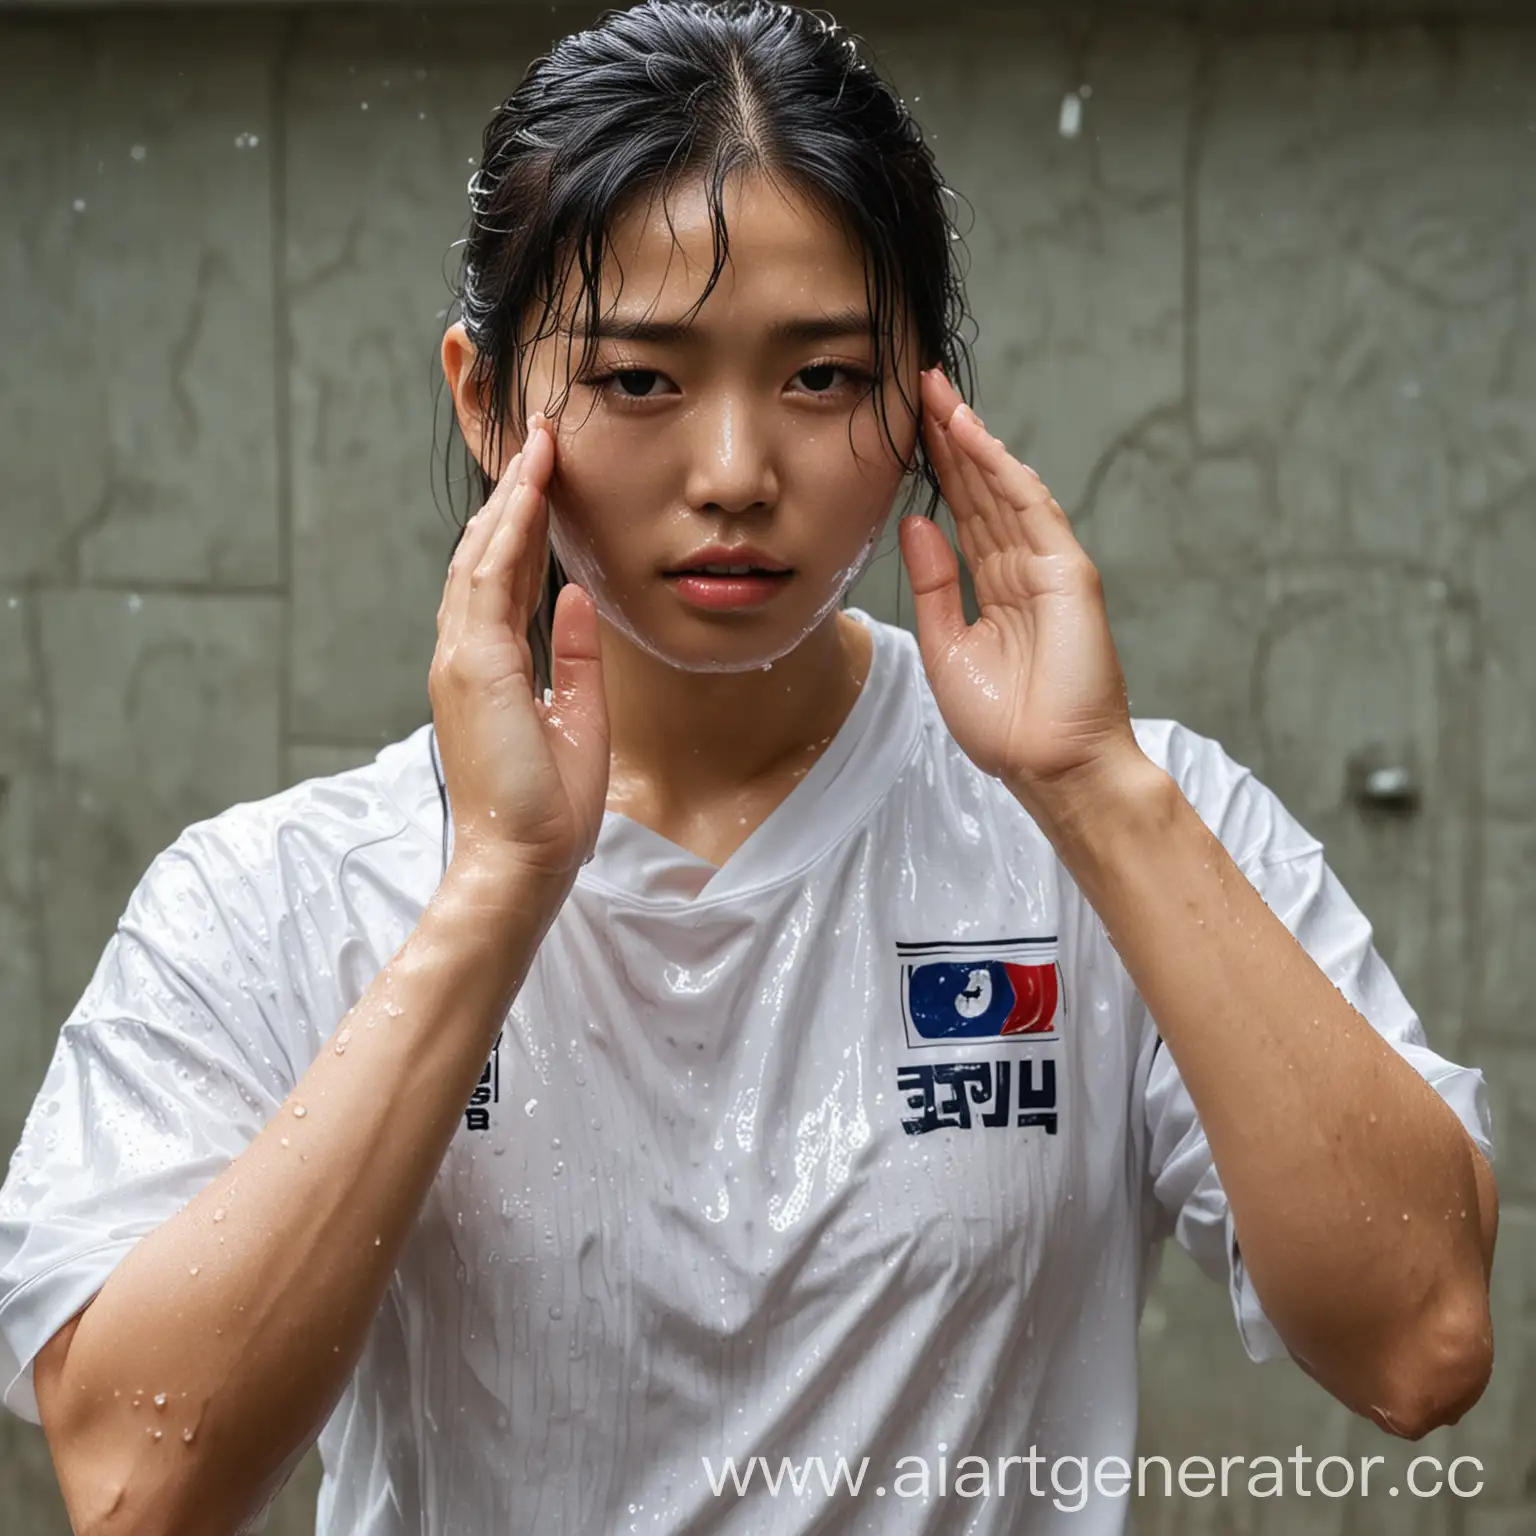 Korean-Football-Player-Standing-in-Wet-Shirt-Beside-Shy-Girl